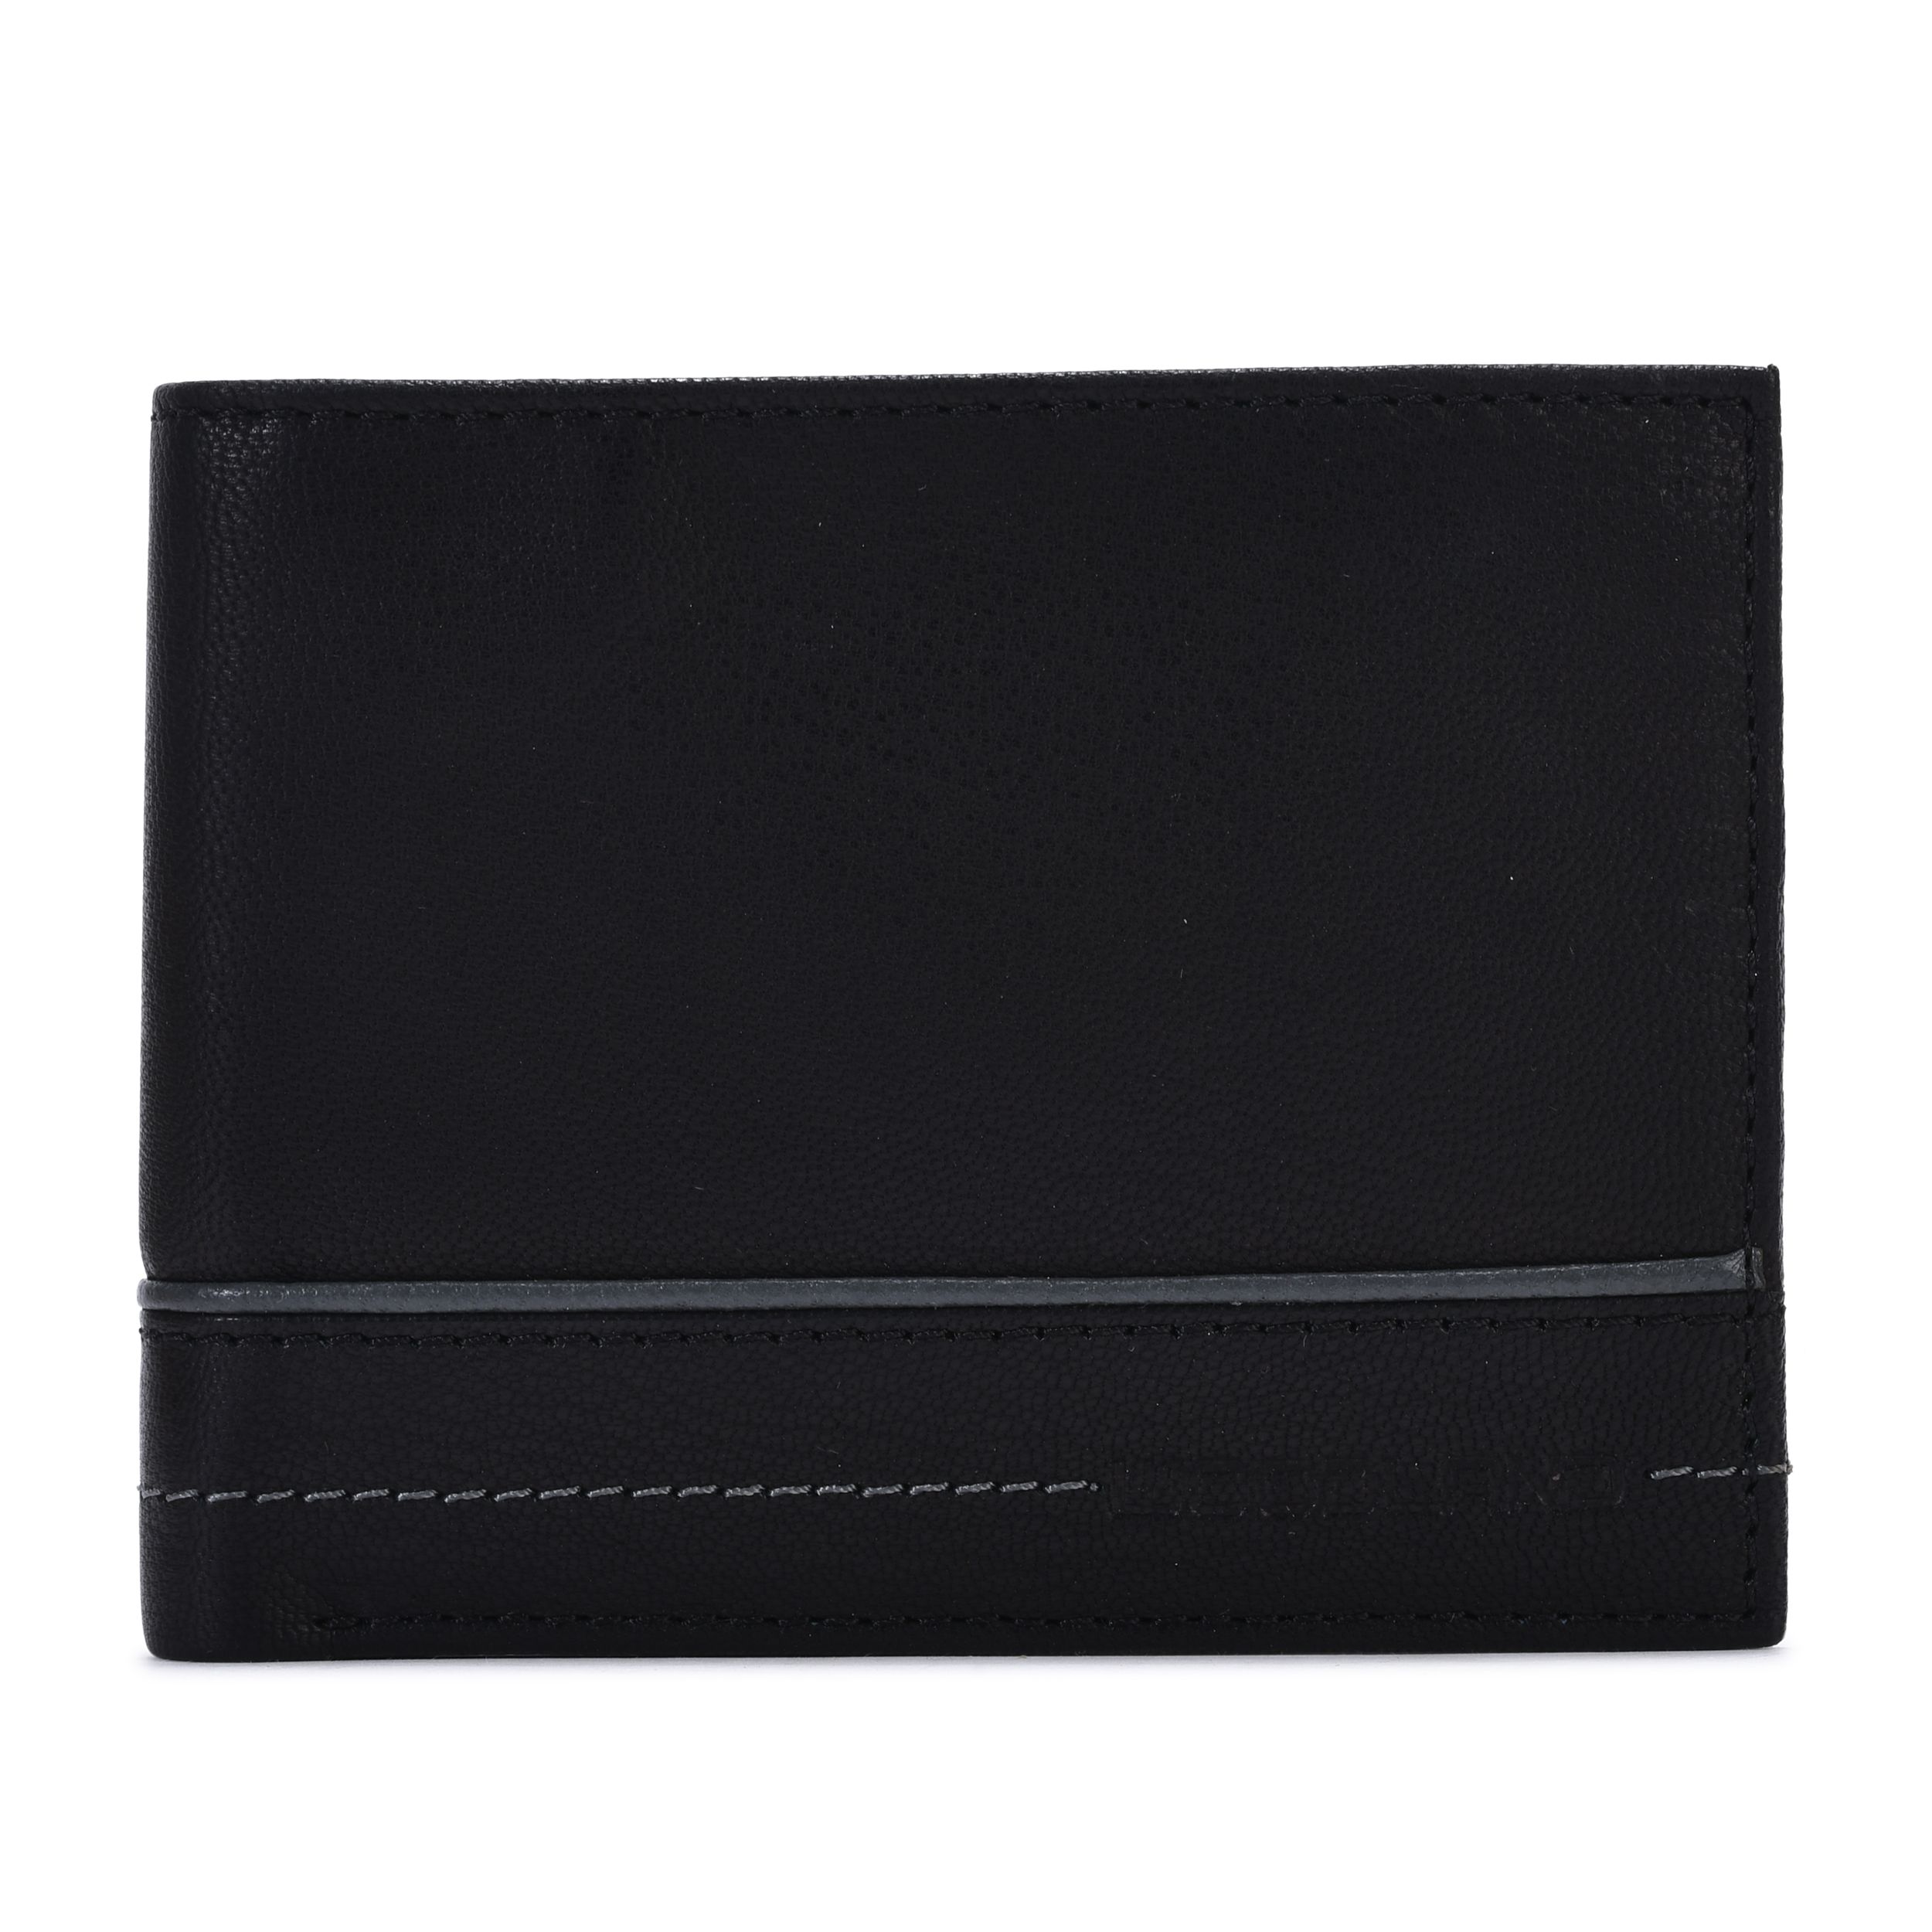 BLACK Leather Wallet For Men